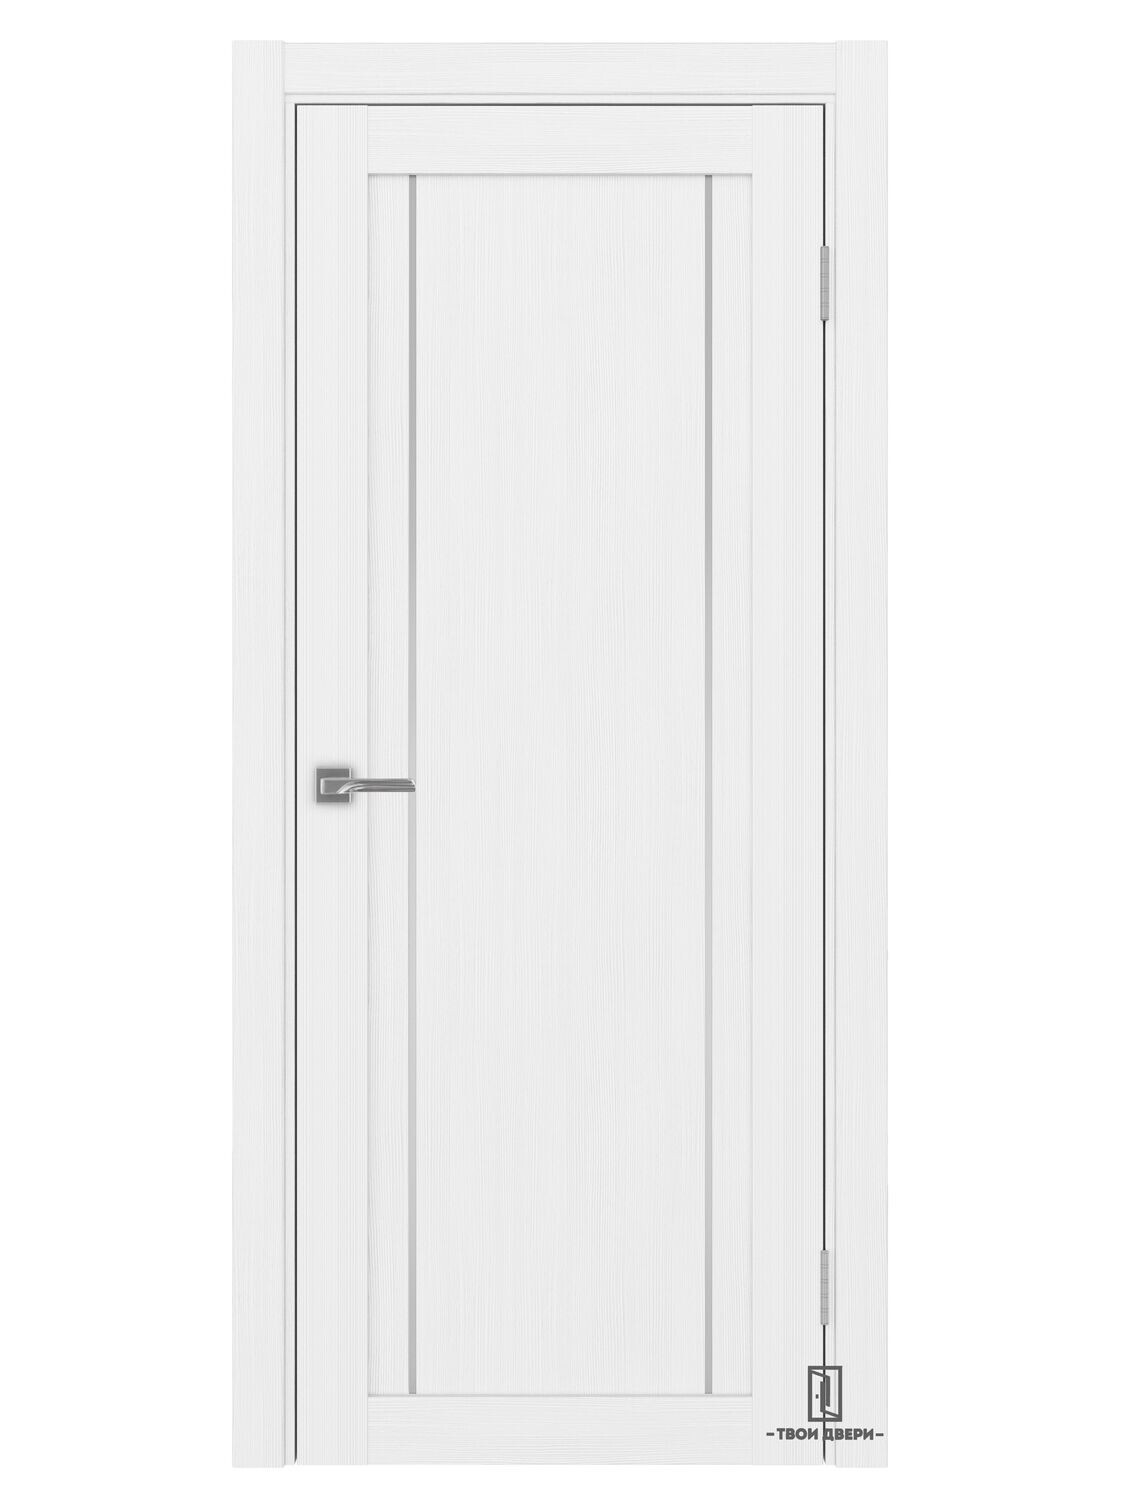 Дверь межкомнатная АПП 522.111 (молдинги), белый лед